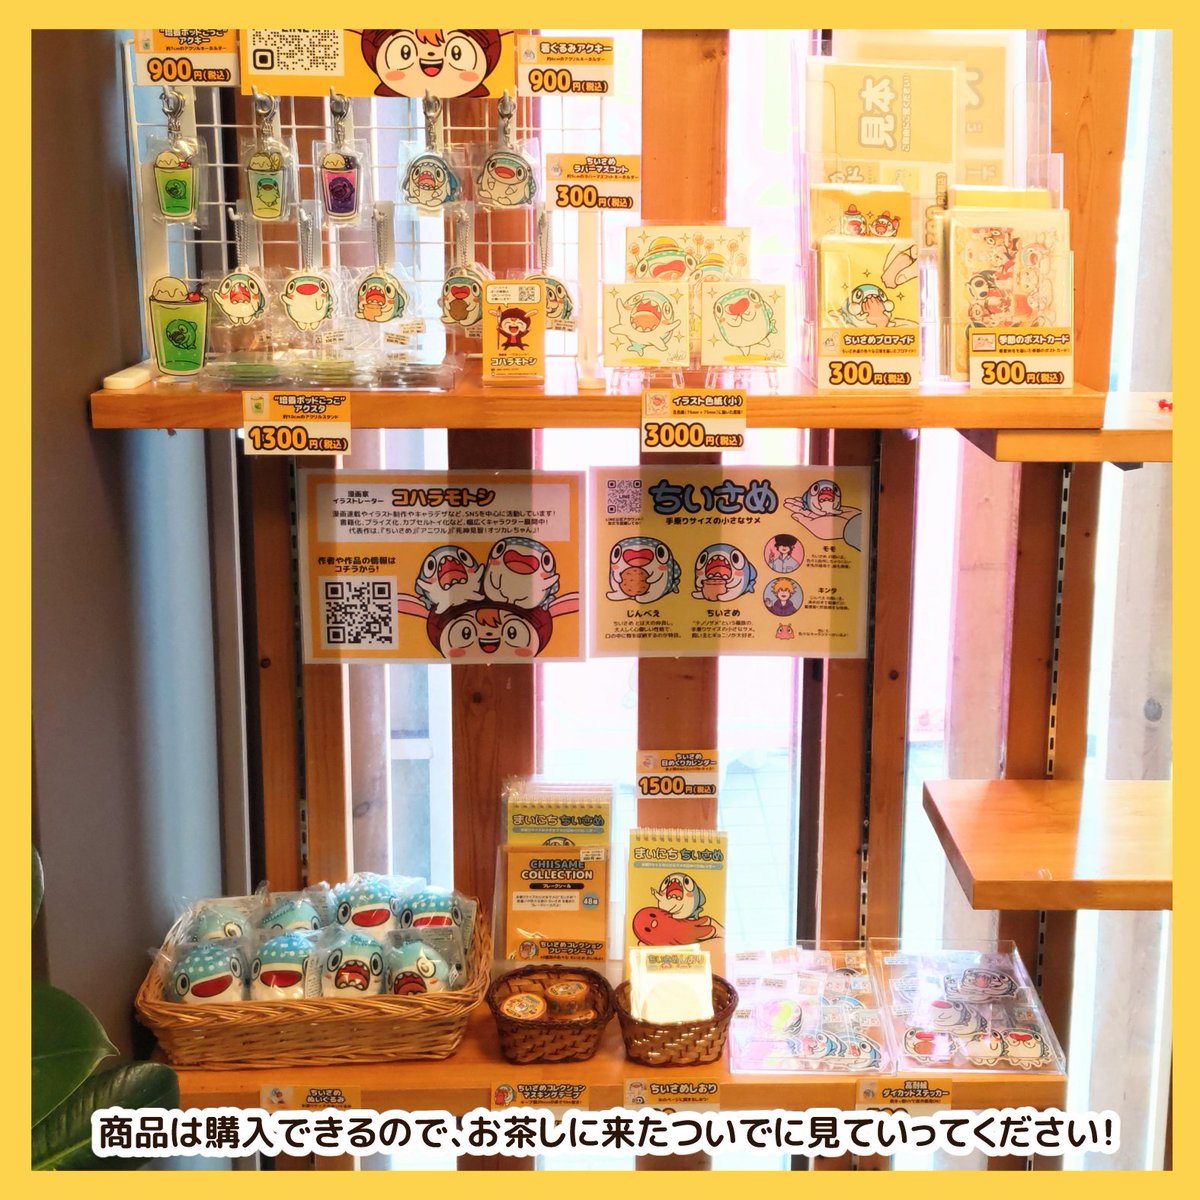 名古屋にある「Book Cafe Co-Necco」さん(@coneccosan)で展示販売を開始しました!  商品は購入できるので、お茶しに来たついでに見ていってください!  時間があれば、ぼくもお店に顔を出すので… タイミングが合えばサインも描くしお話もします!  10月27日(金)まで展示販売しています!